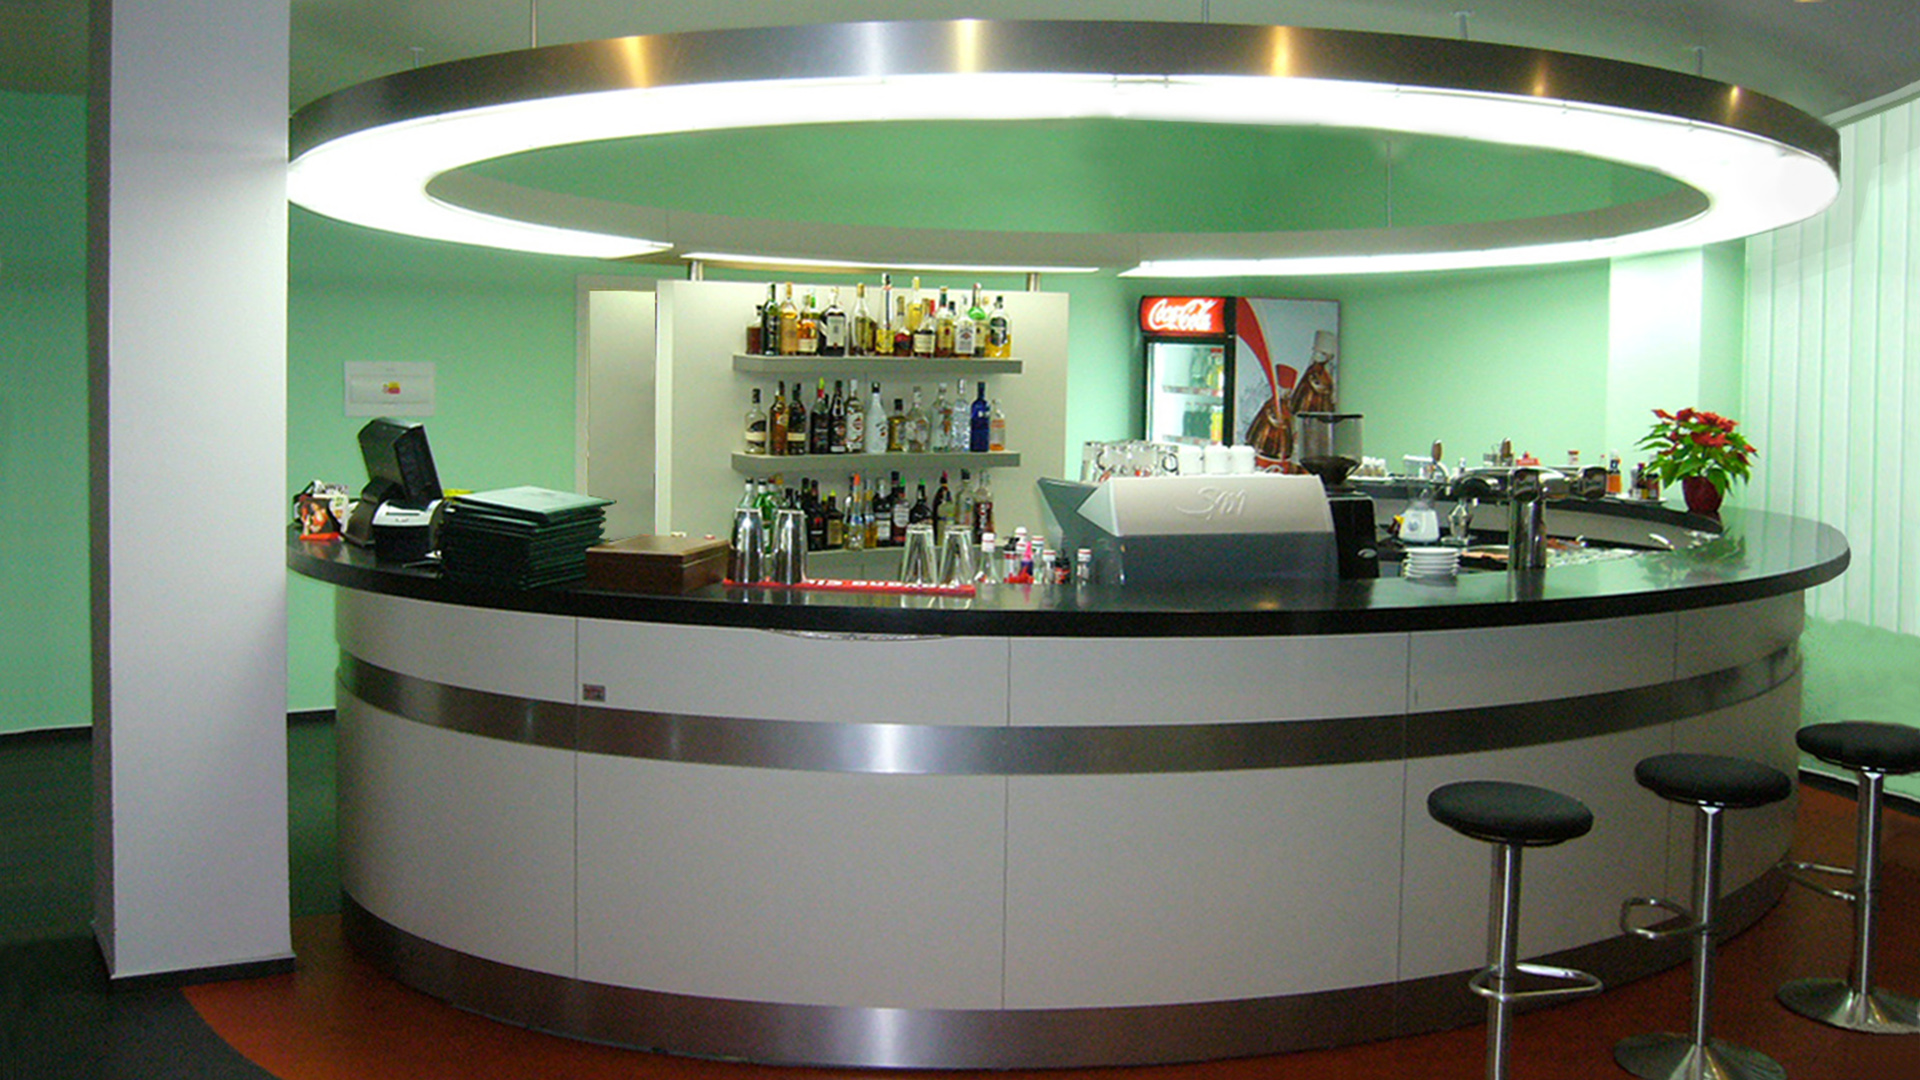 Realizace interiéru restaurace a sportovního centra ve Slaném. Barový pult je řešen jako přerušený ovál. Sádrokartónový podhled opisuje barový pult, osvětlení umocňuje křivku. Materiál